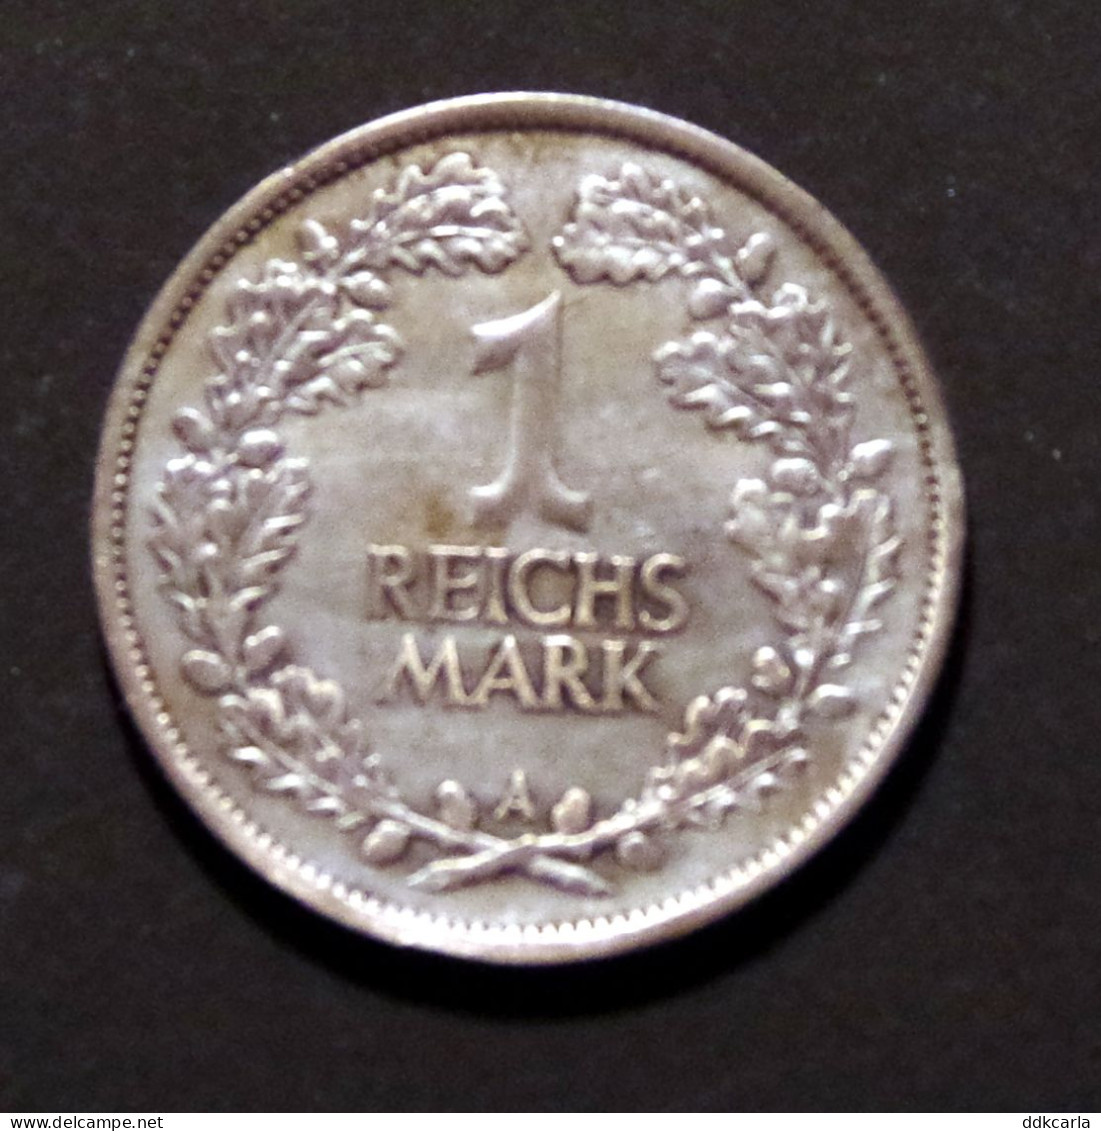 1 Reichs Mark 1926 A  Weimarrepubliek (silber) - 1 Mark & 1 Reichsmark